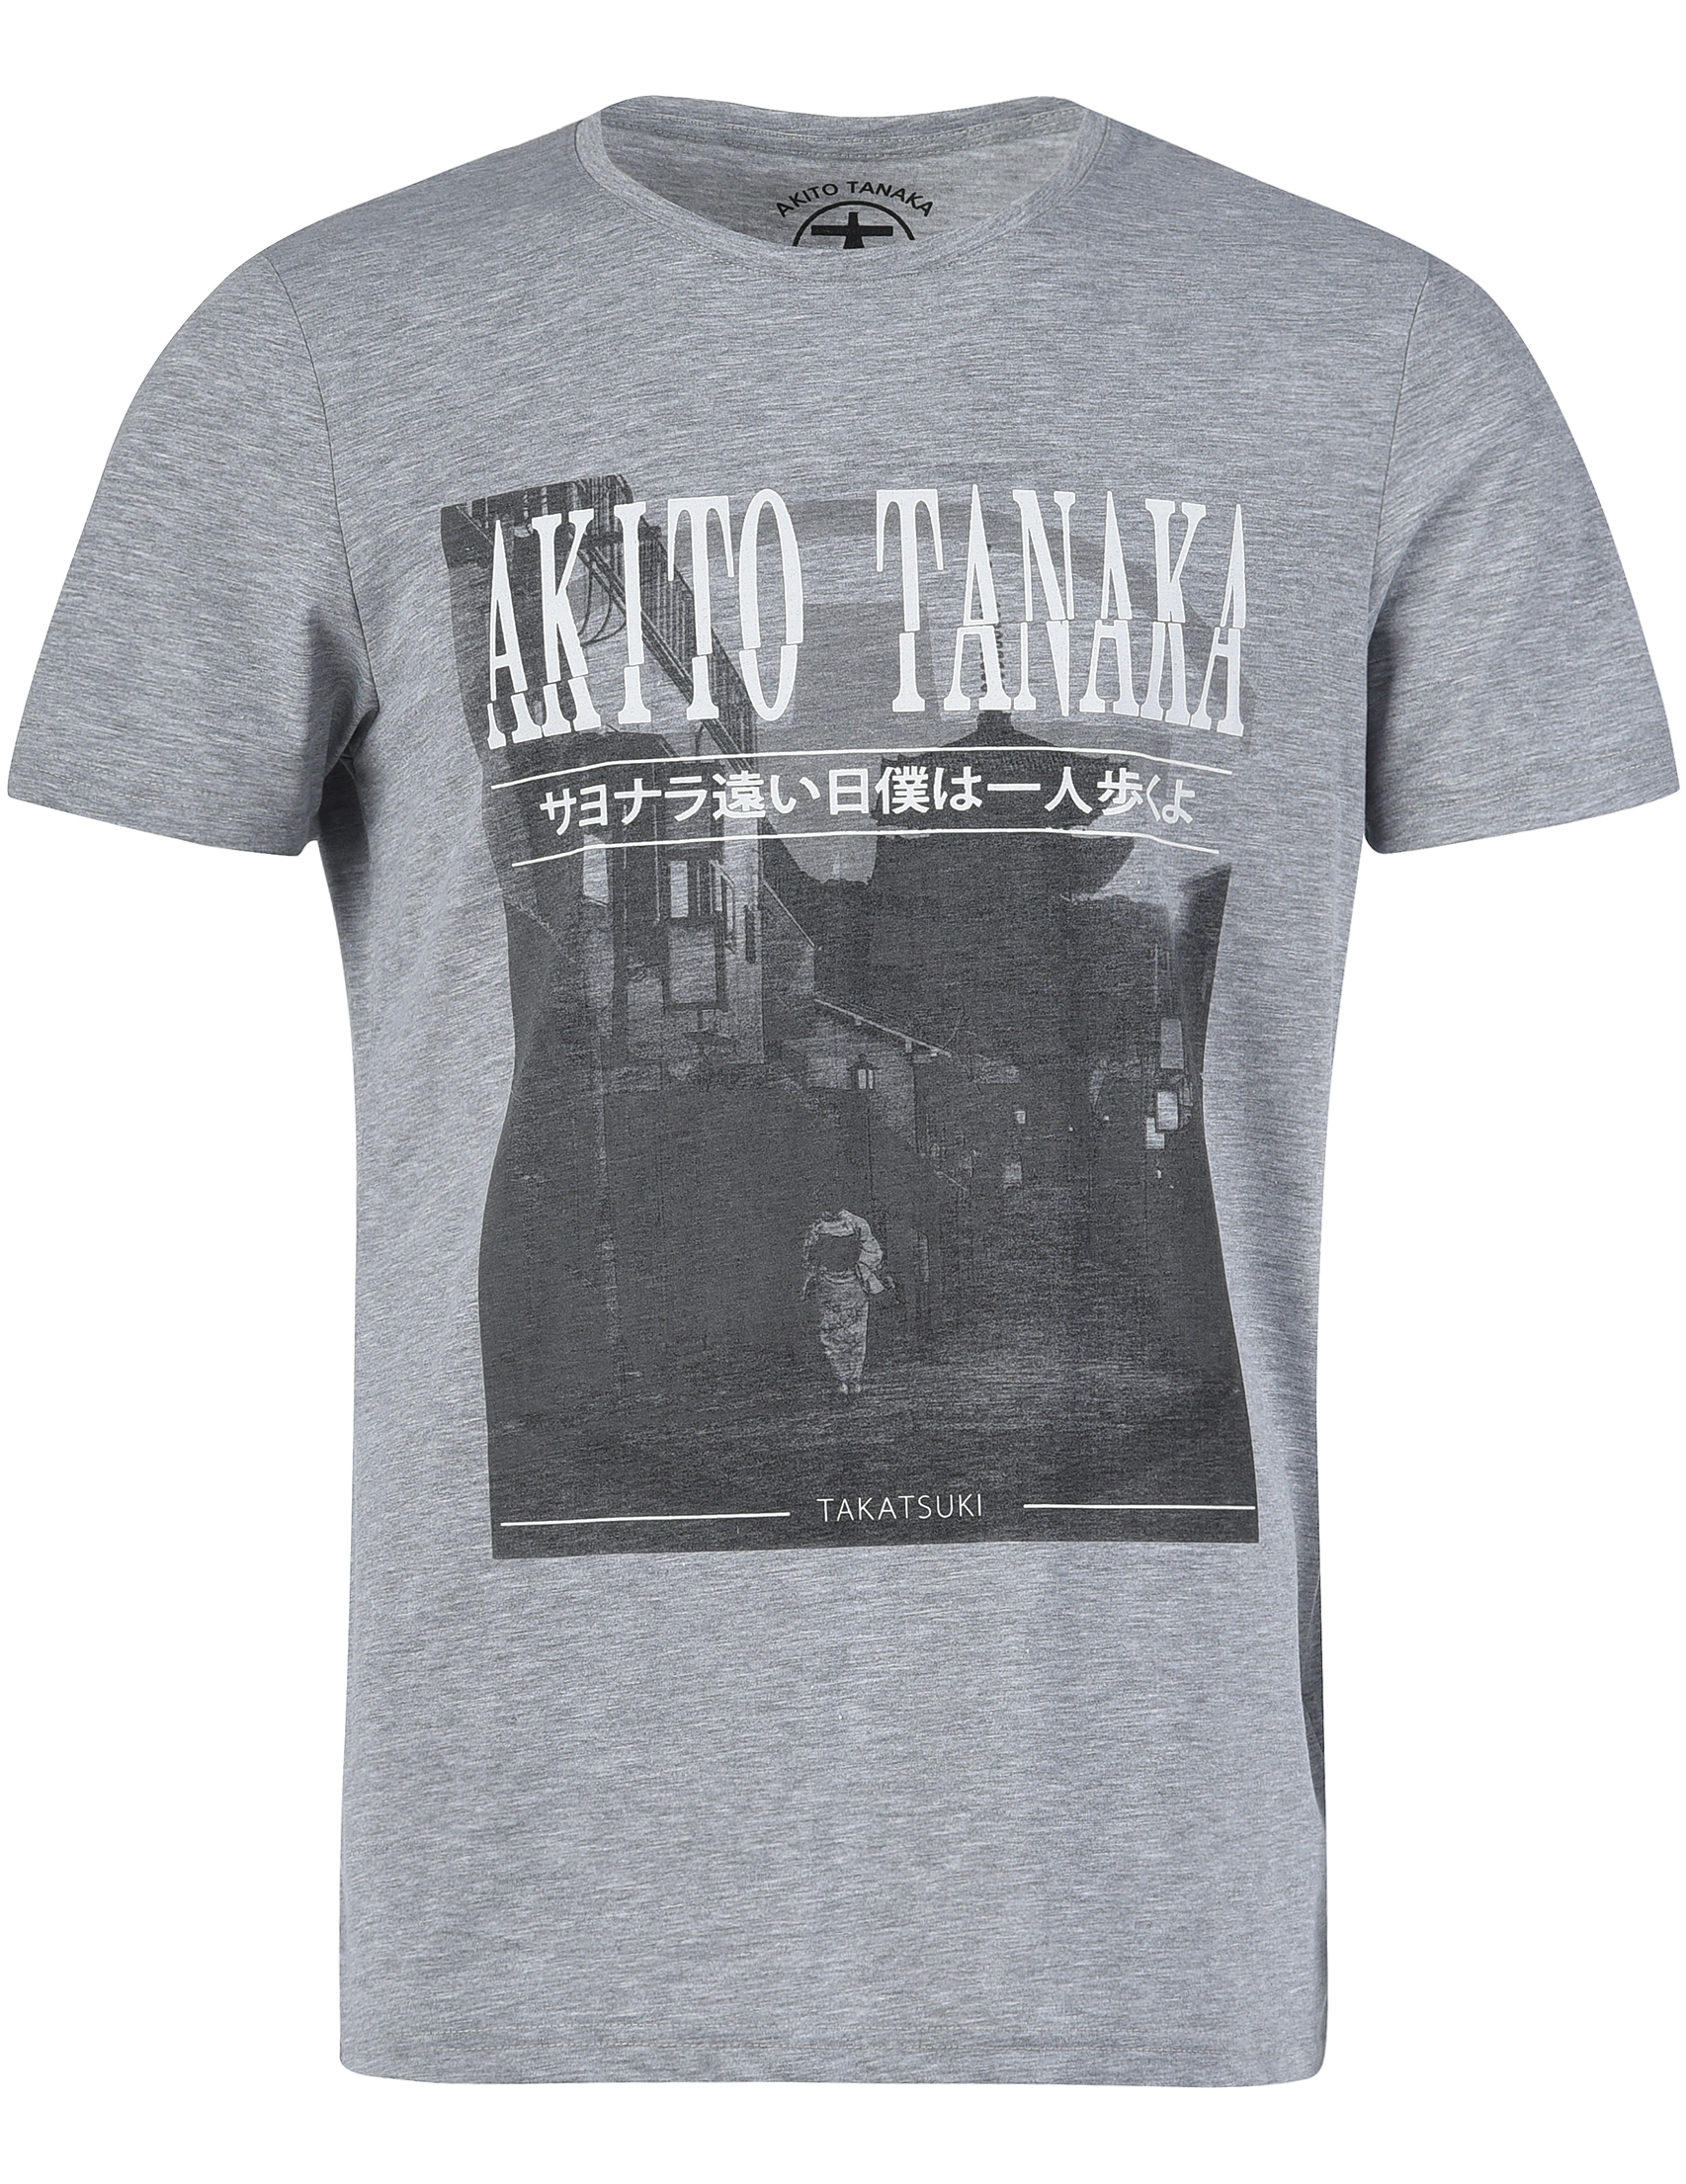 Мужская футболка AKITO TANAKA 905-GEISHA-AREA_gray